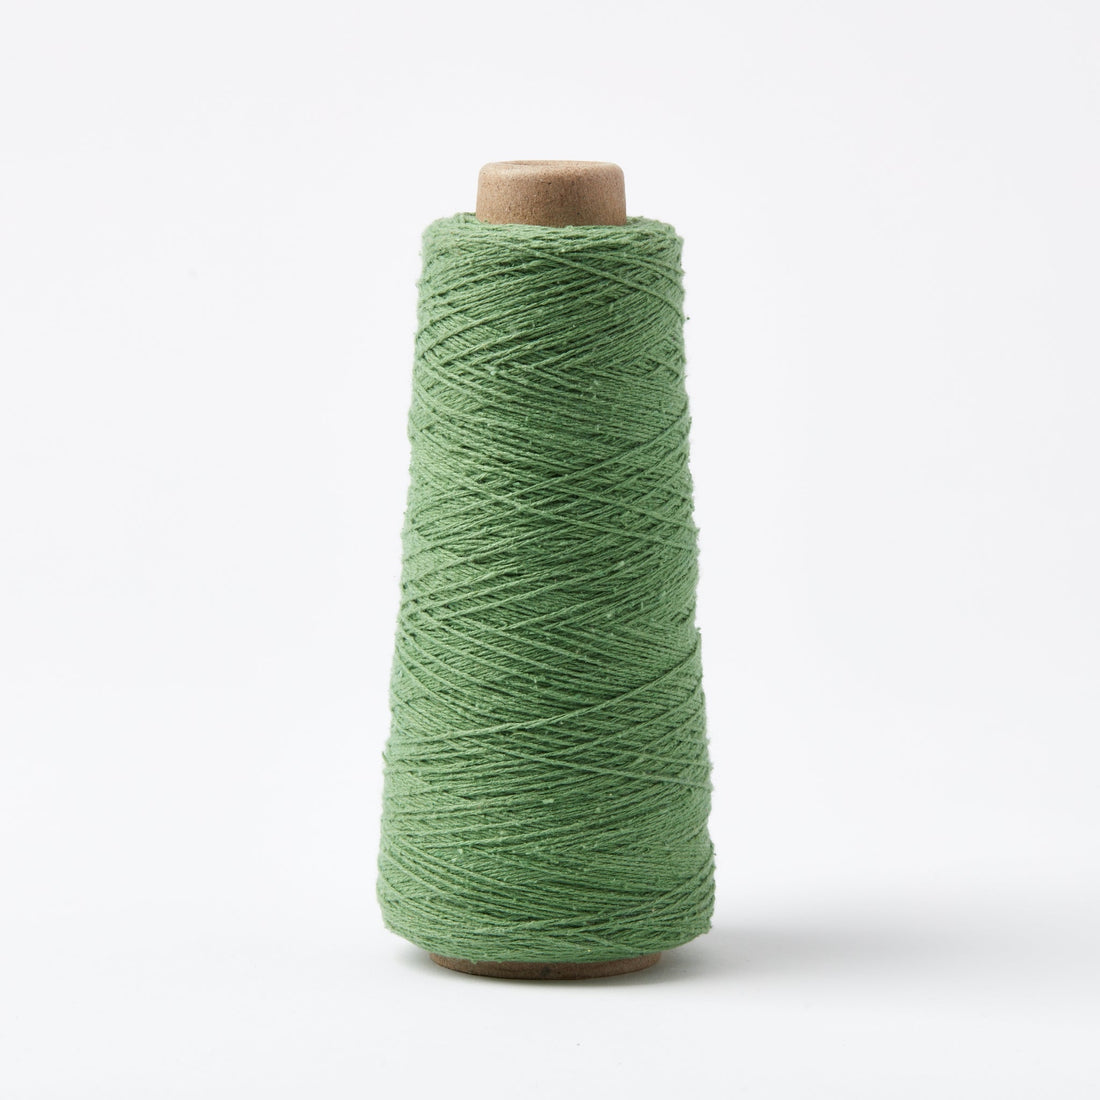 Sero silk noil weaving yarn